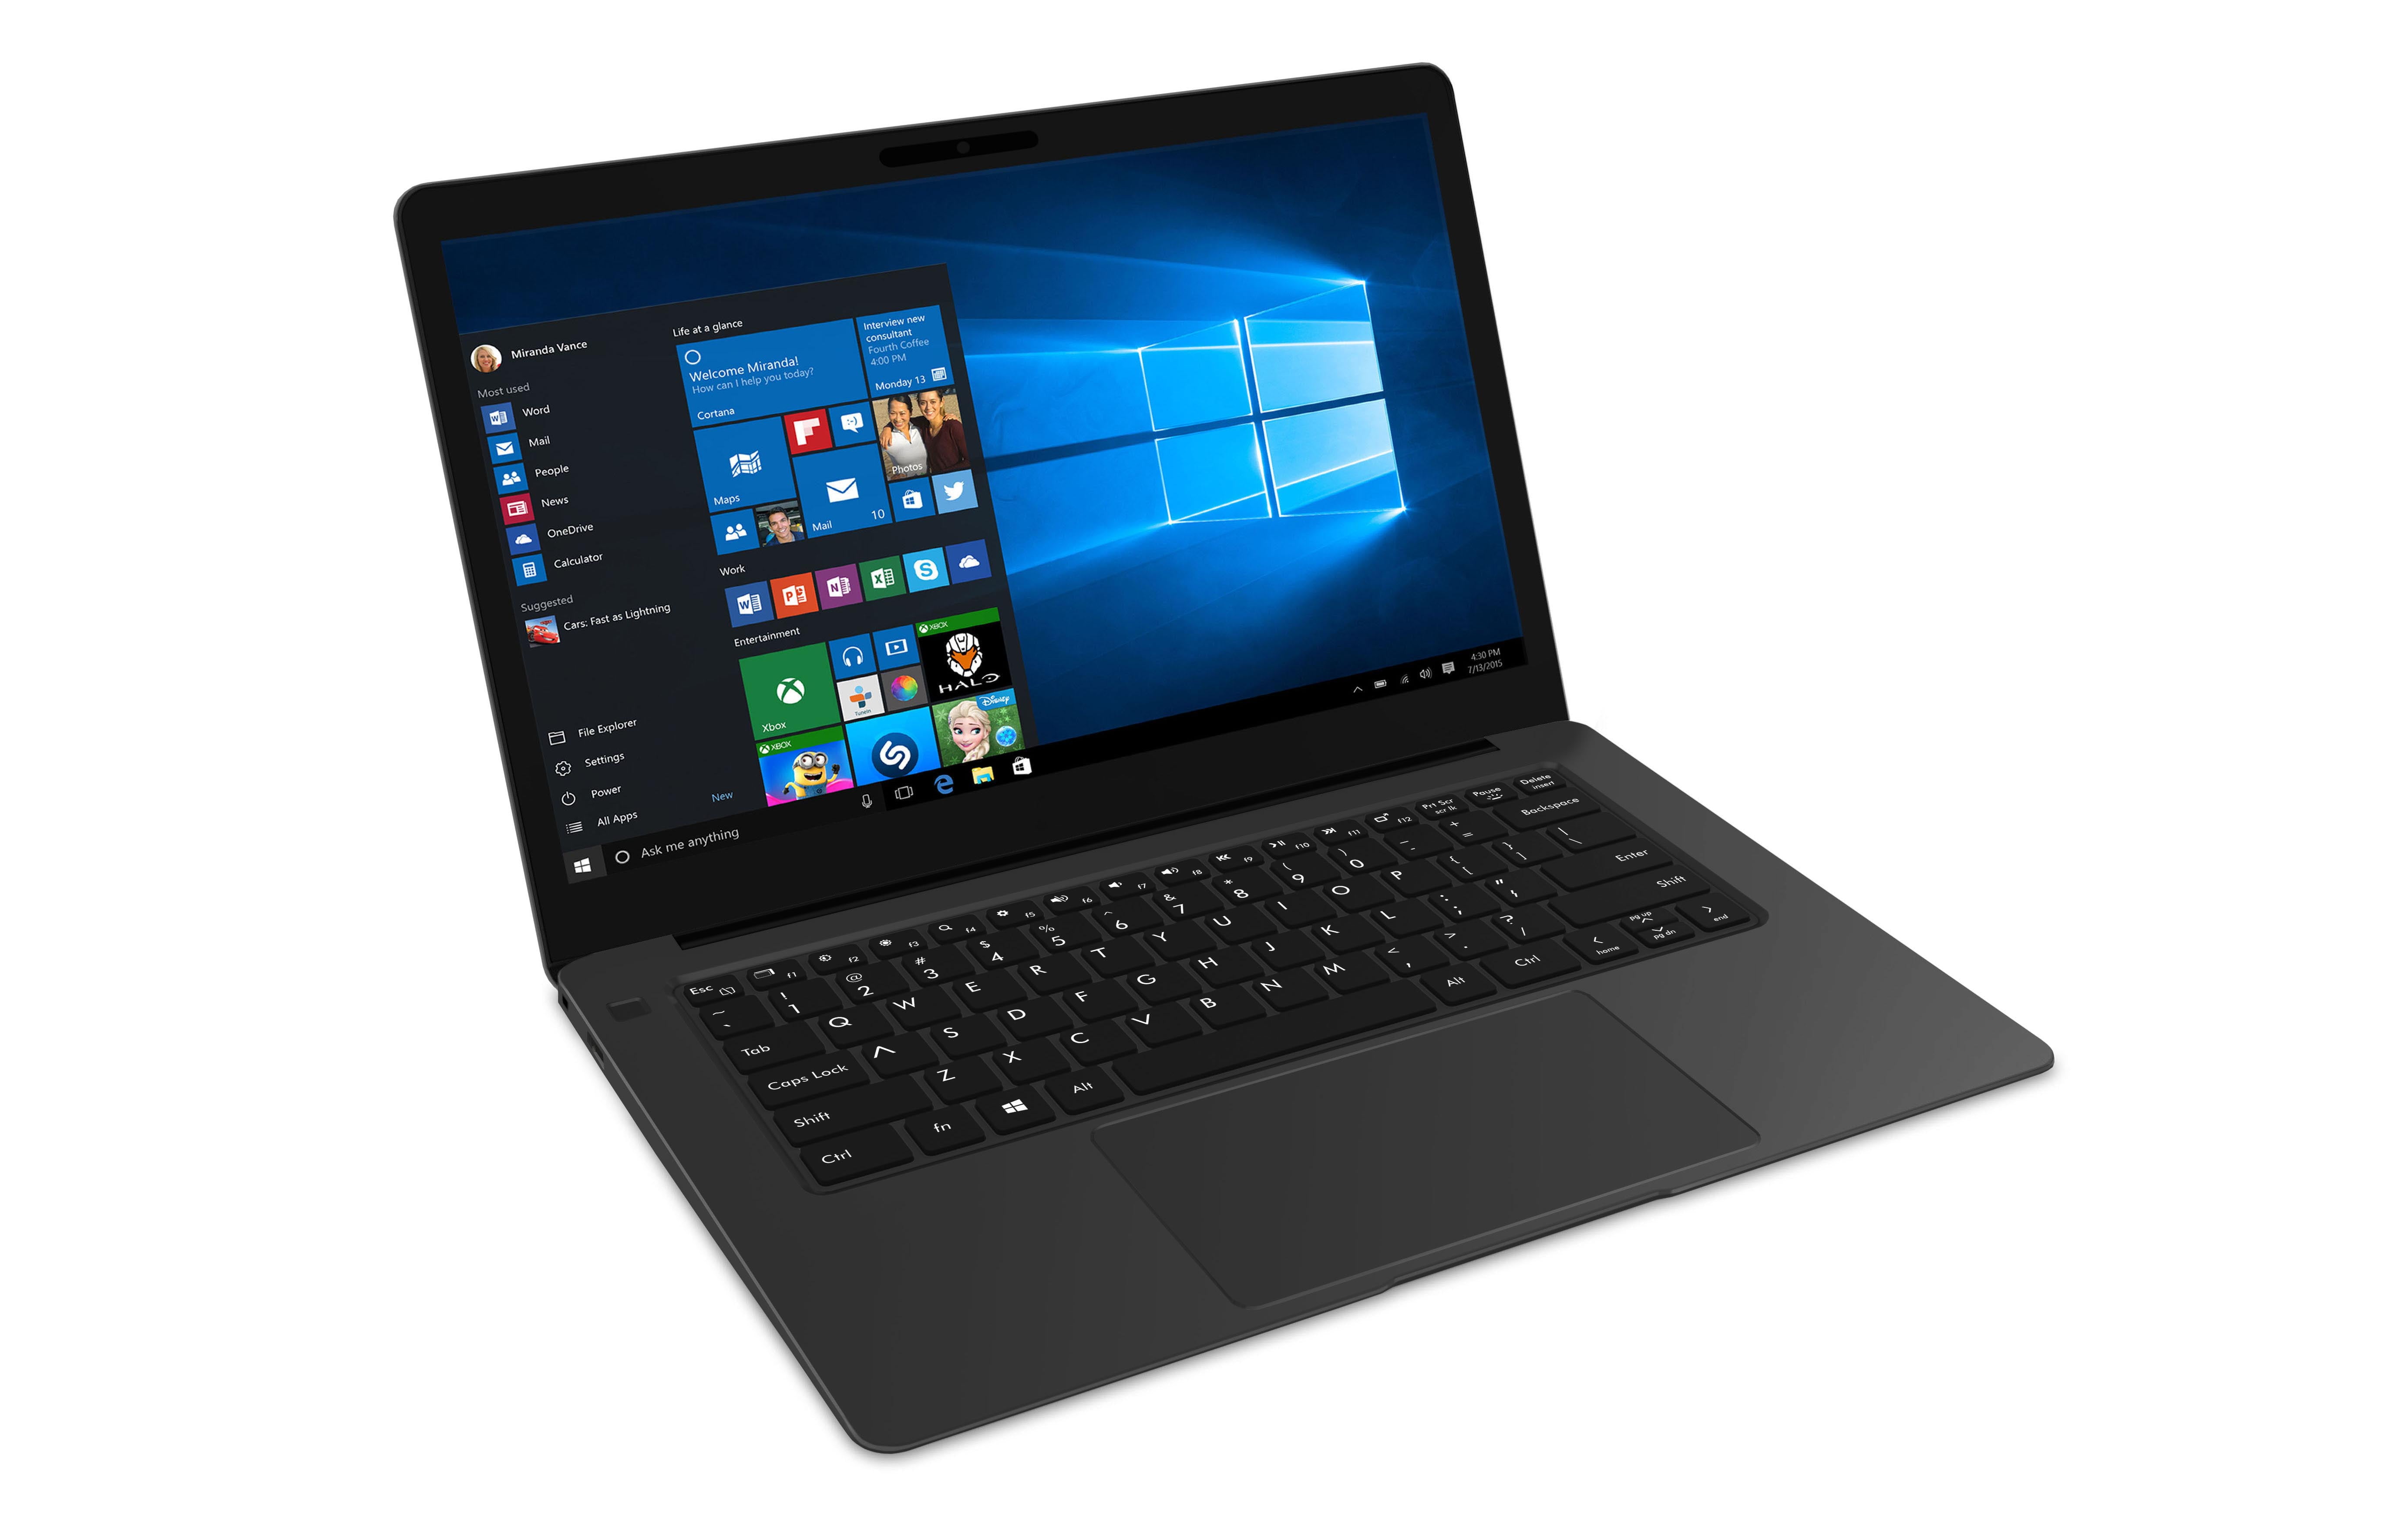 AVITA 14 Laptop, Windows 10, Intel Core i5 Processor, 8GB RAM, 128GB SSD Storage, All Metal - Silver - Walmart.com